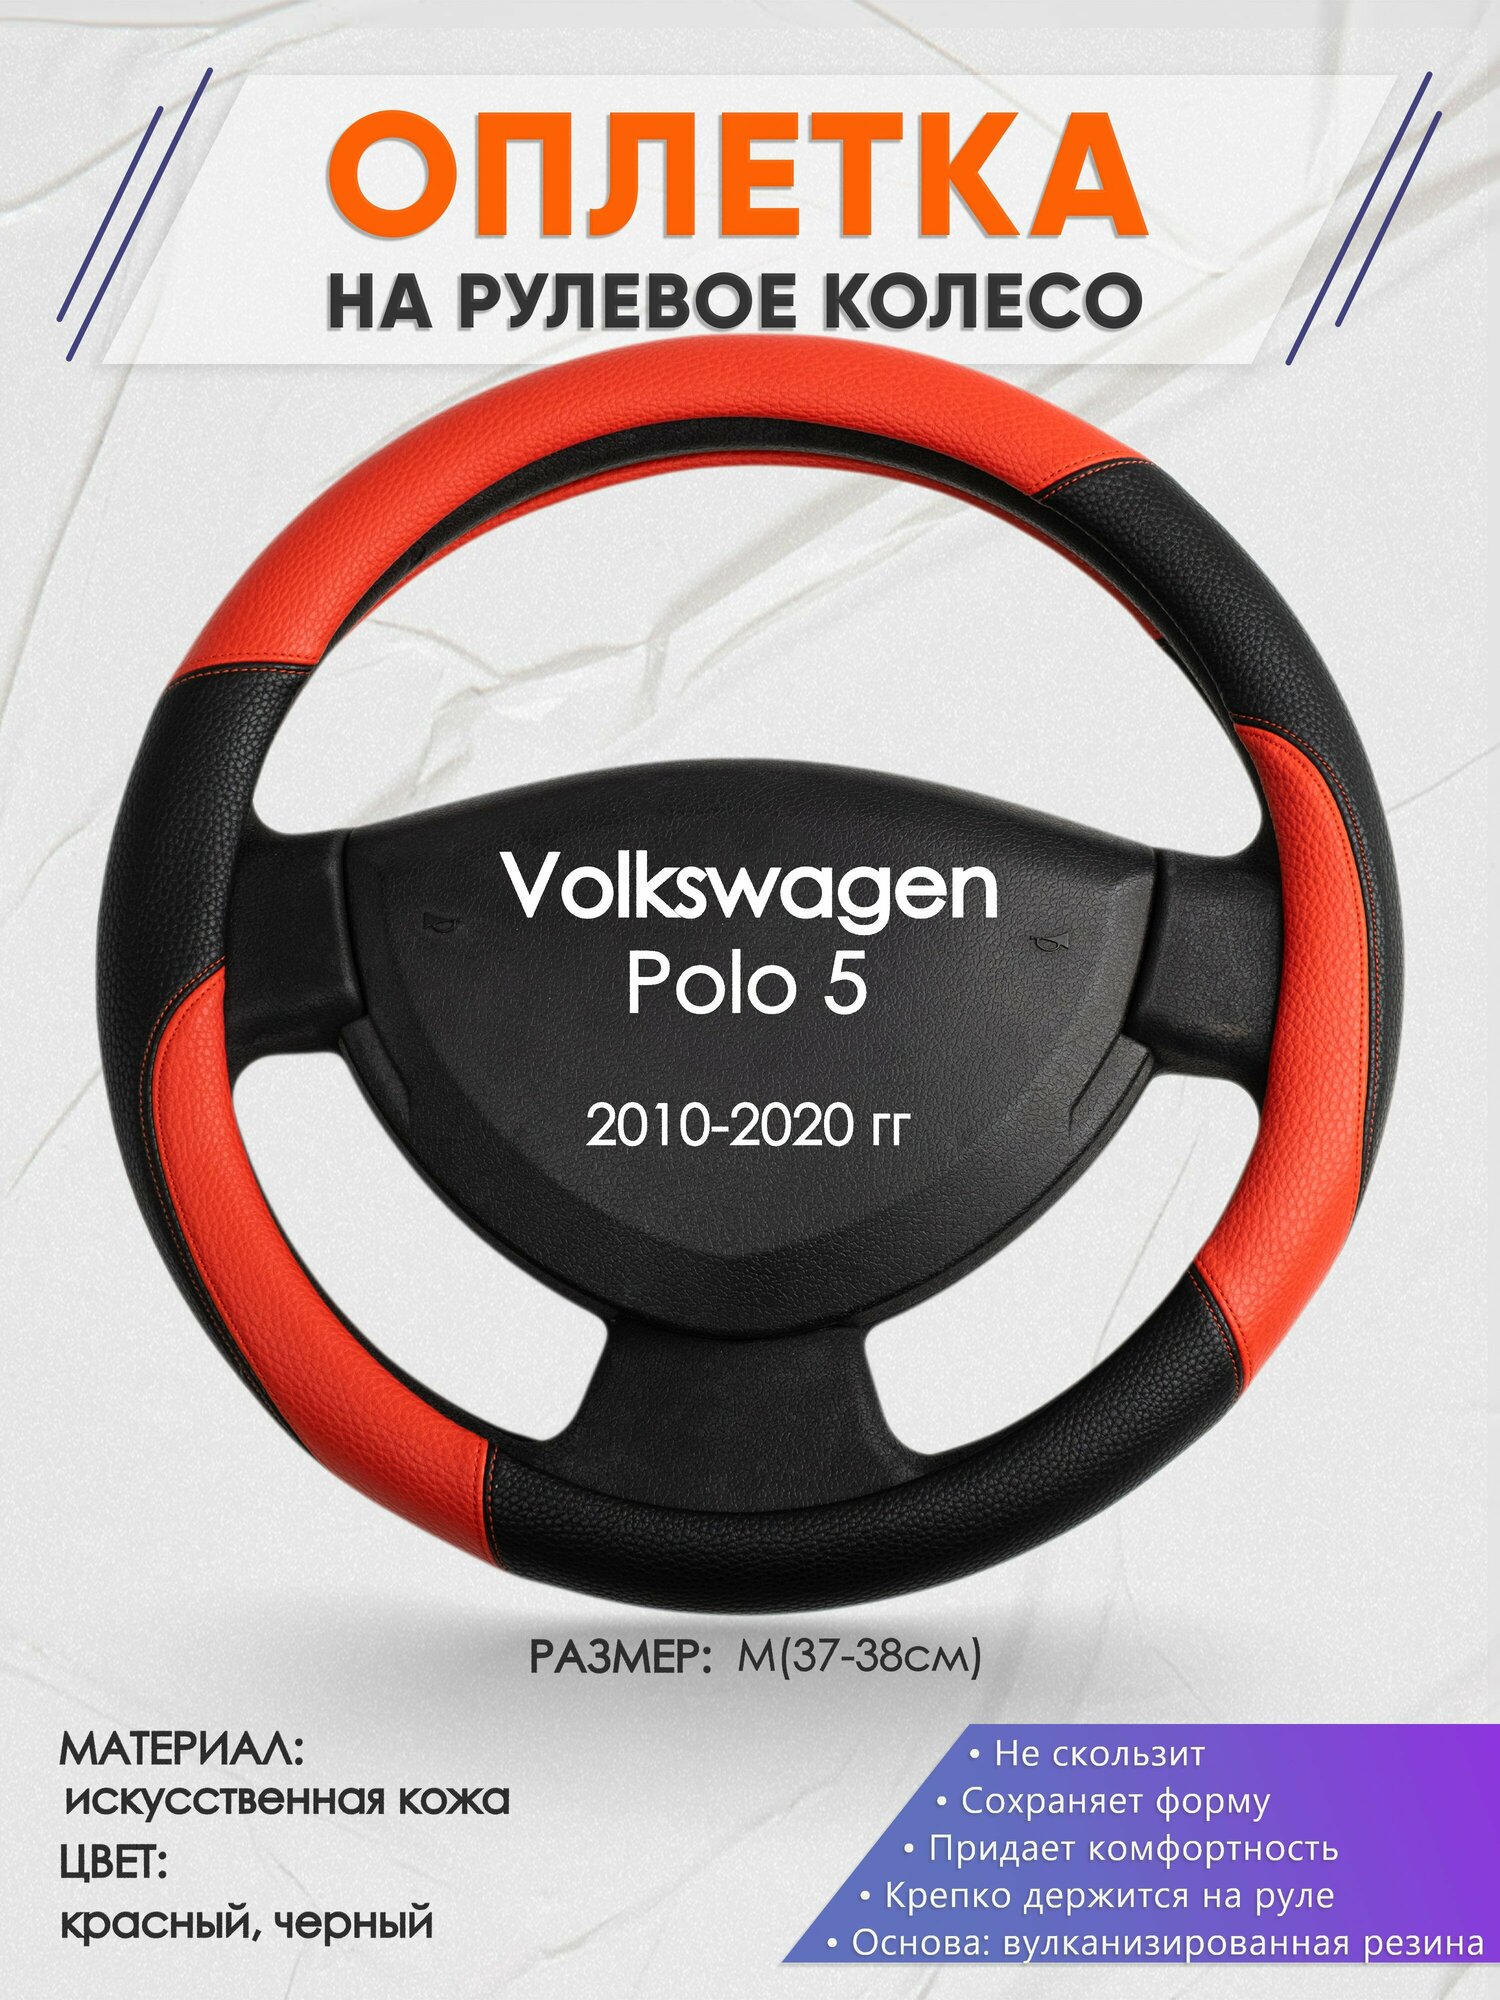 Оплетка на руль для Volkswagen Polo 5(Фольксваген Поло 5) 2010-2020 M(37-38см) Искусственная кожа 17